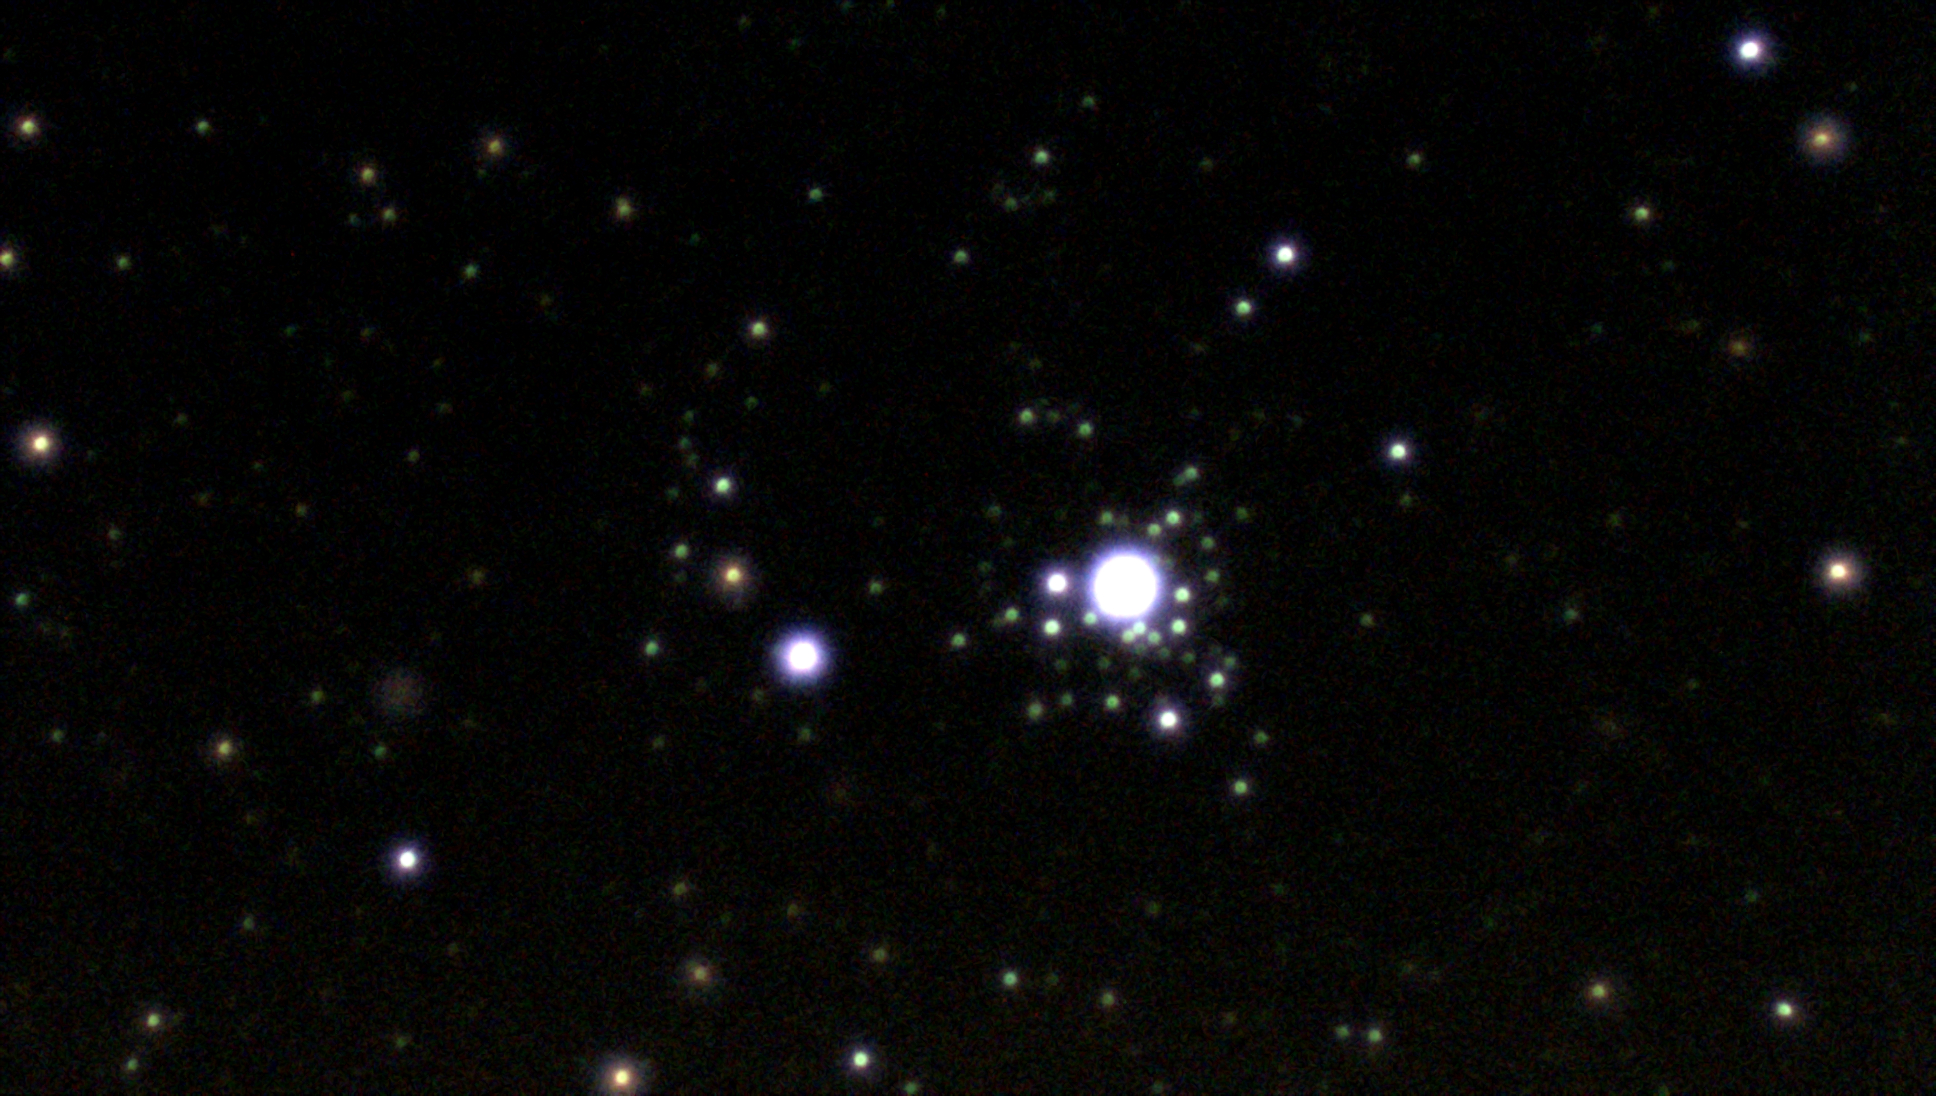 天体観測 おおいぬ座の線香花火状星団ngc2362を撮影しました 空の散歩 天体情報ブログ